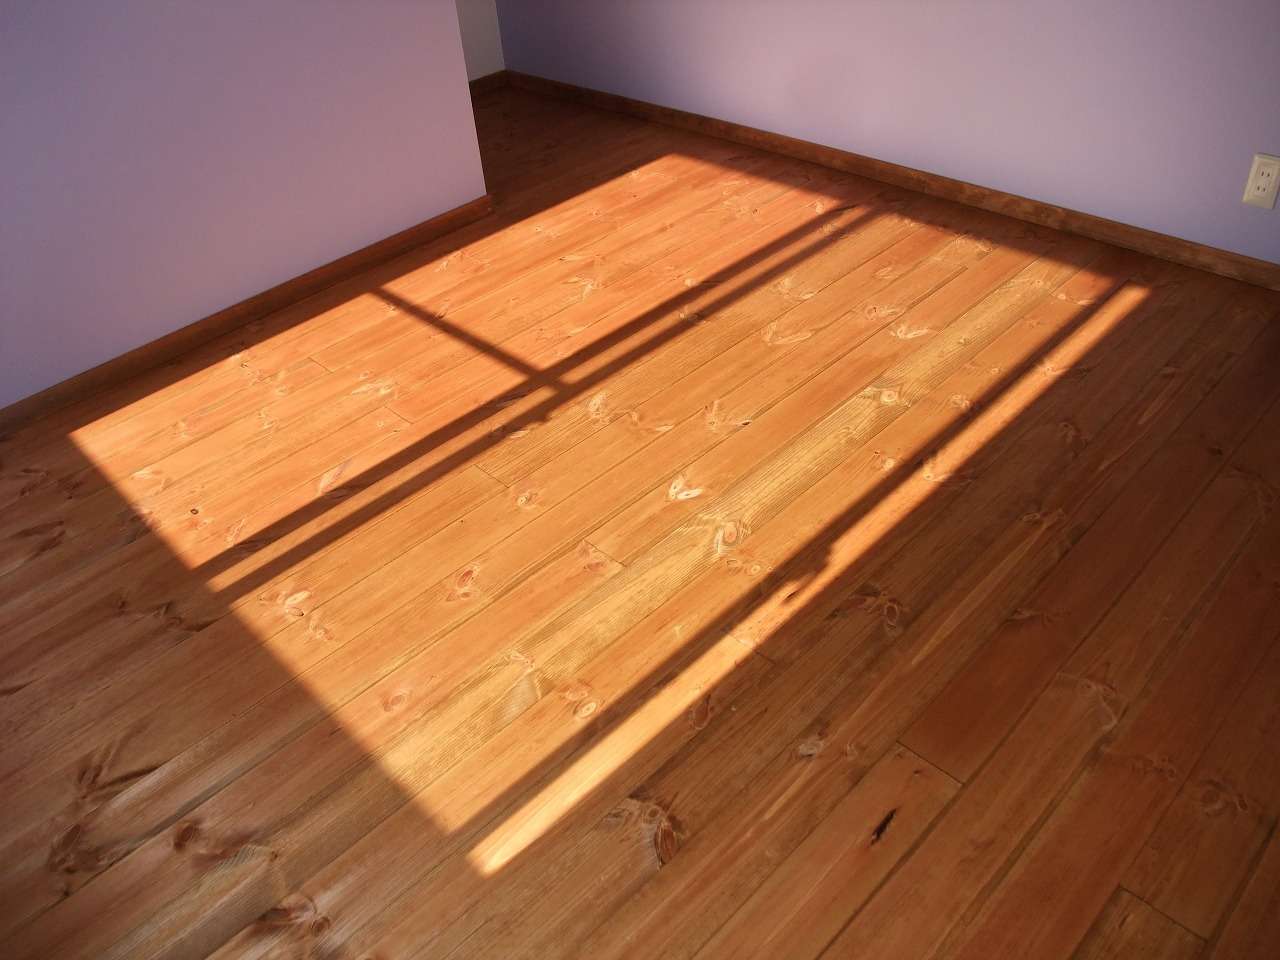 床は無垢板のパイン材の自然オイルにて塗装をかけました。  色合いがとてもきれいに仕上がり、肌触りがよく暖かい床です。